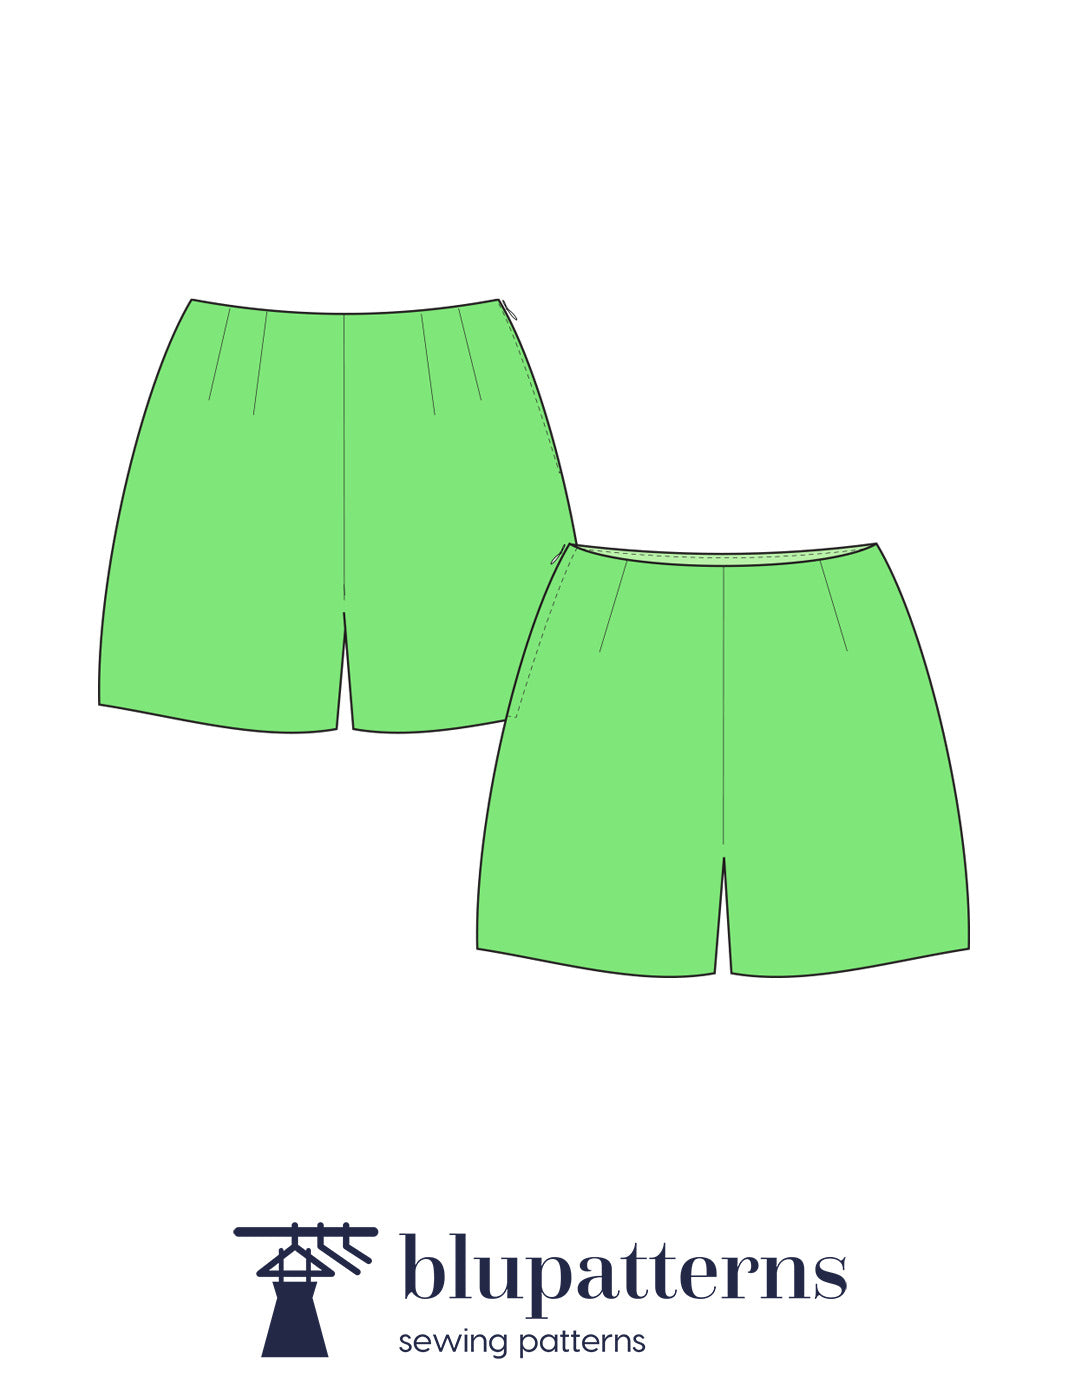 Harper pdf shorts sewing pattern